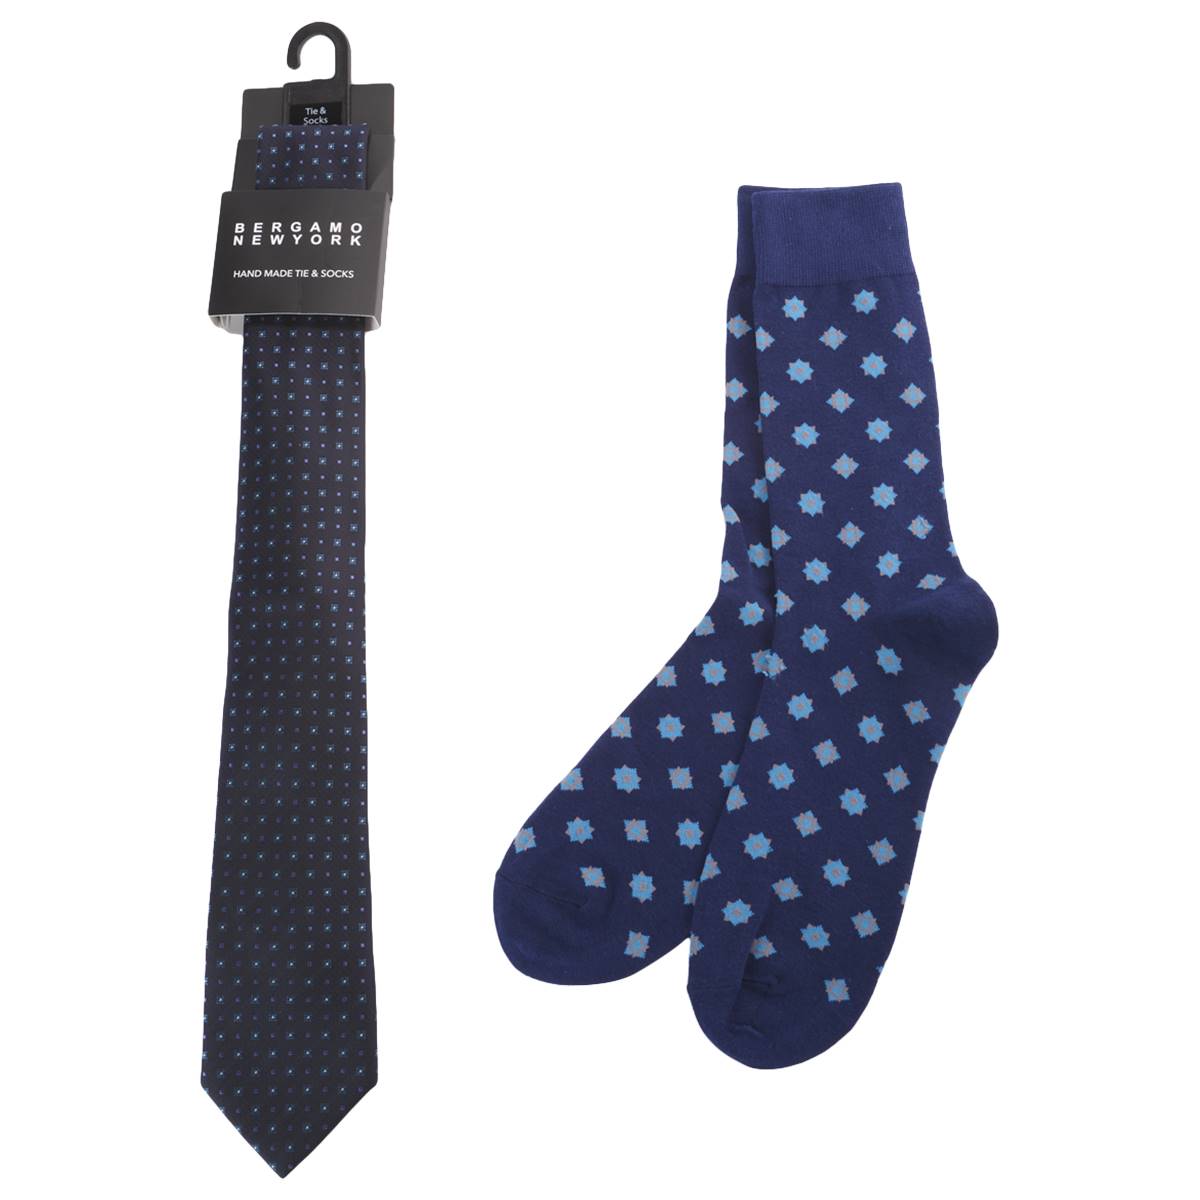 Mens Bergamo Tie/Sock Set - Teal/Navy